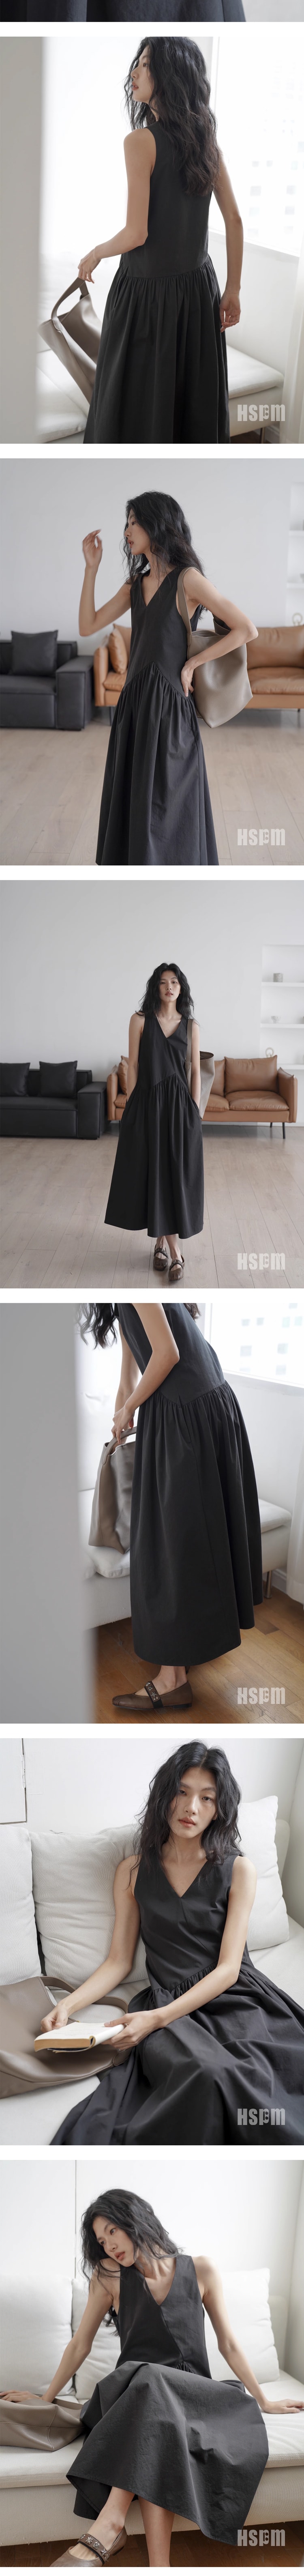 【中国直邮】HSPM新款V领无袖连衣裙 黑色 S